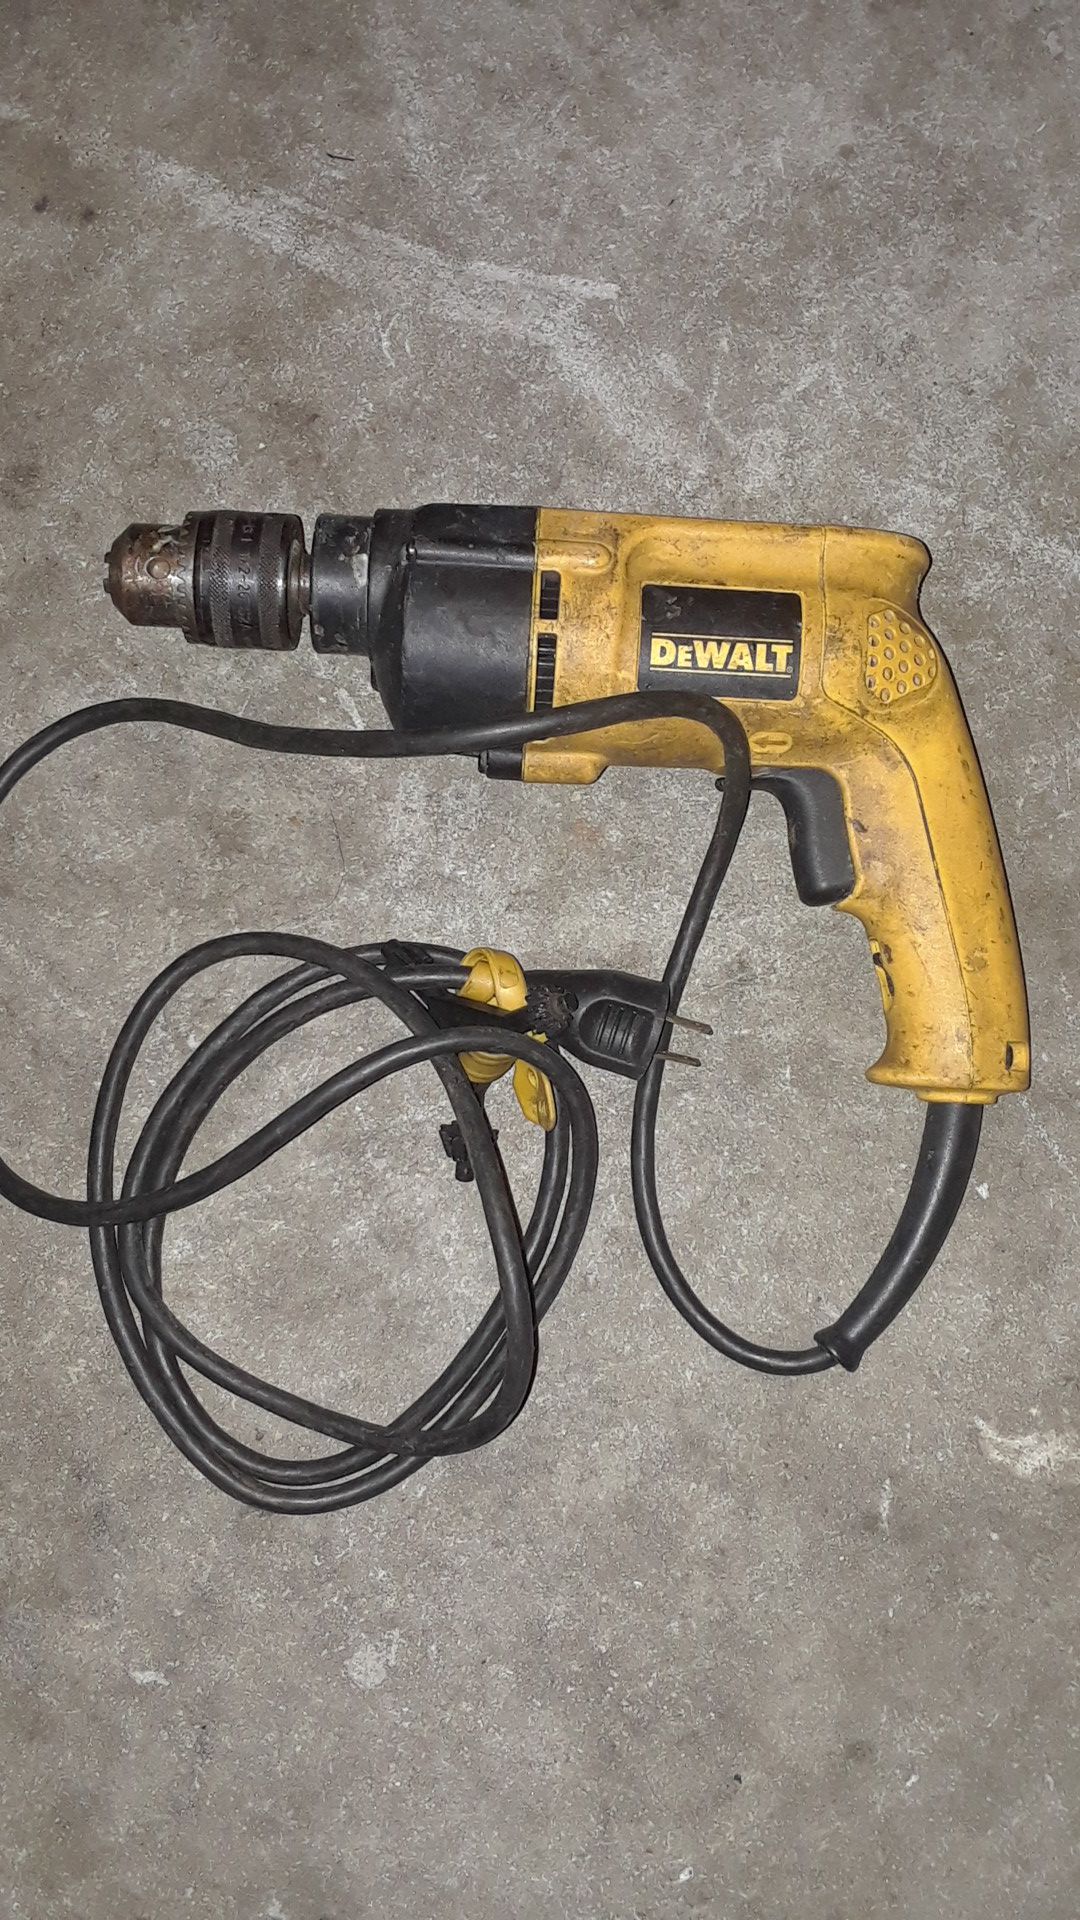 Dewalt hammer drill DW511 power tool